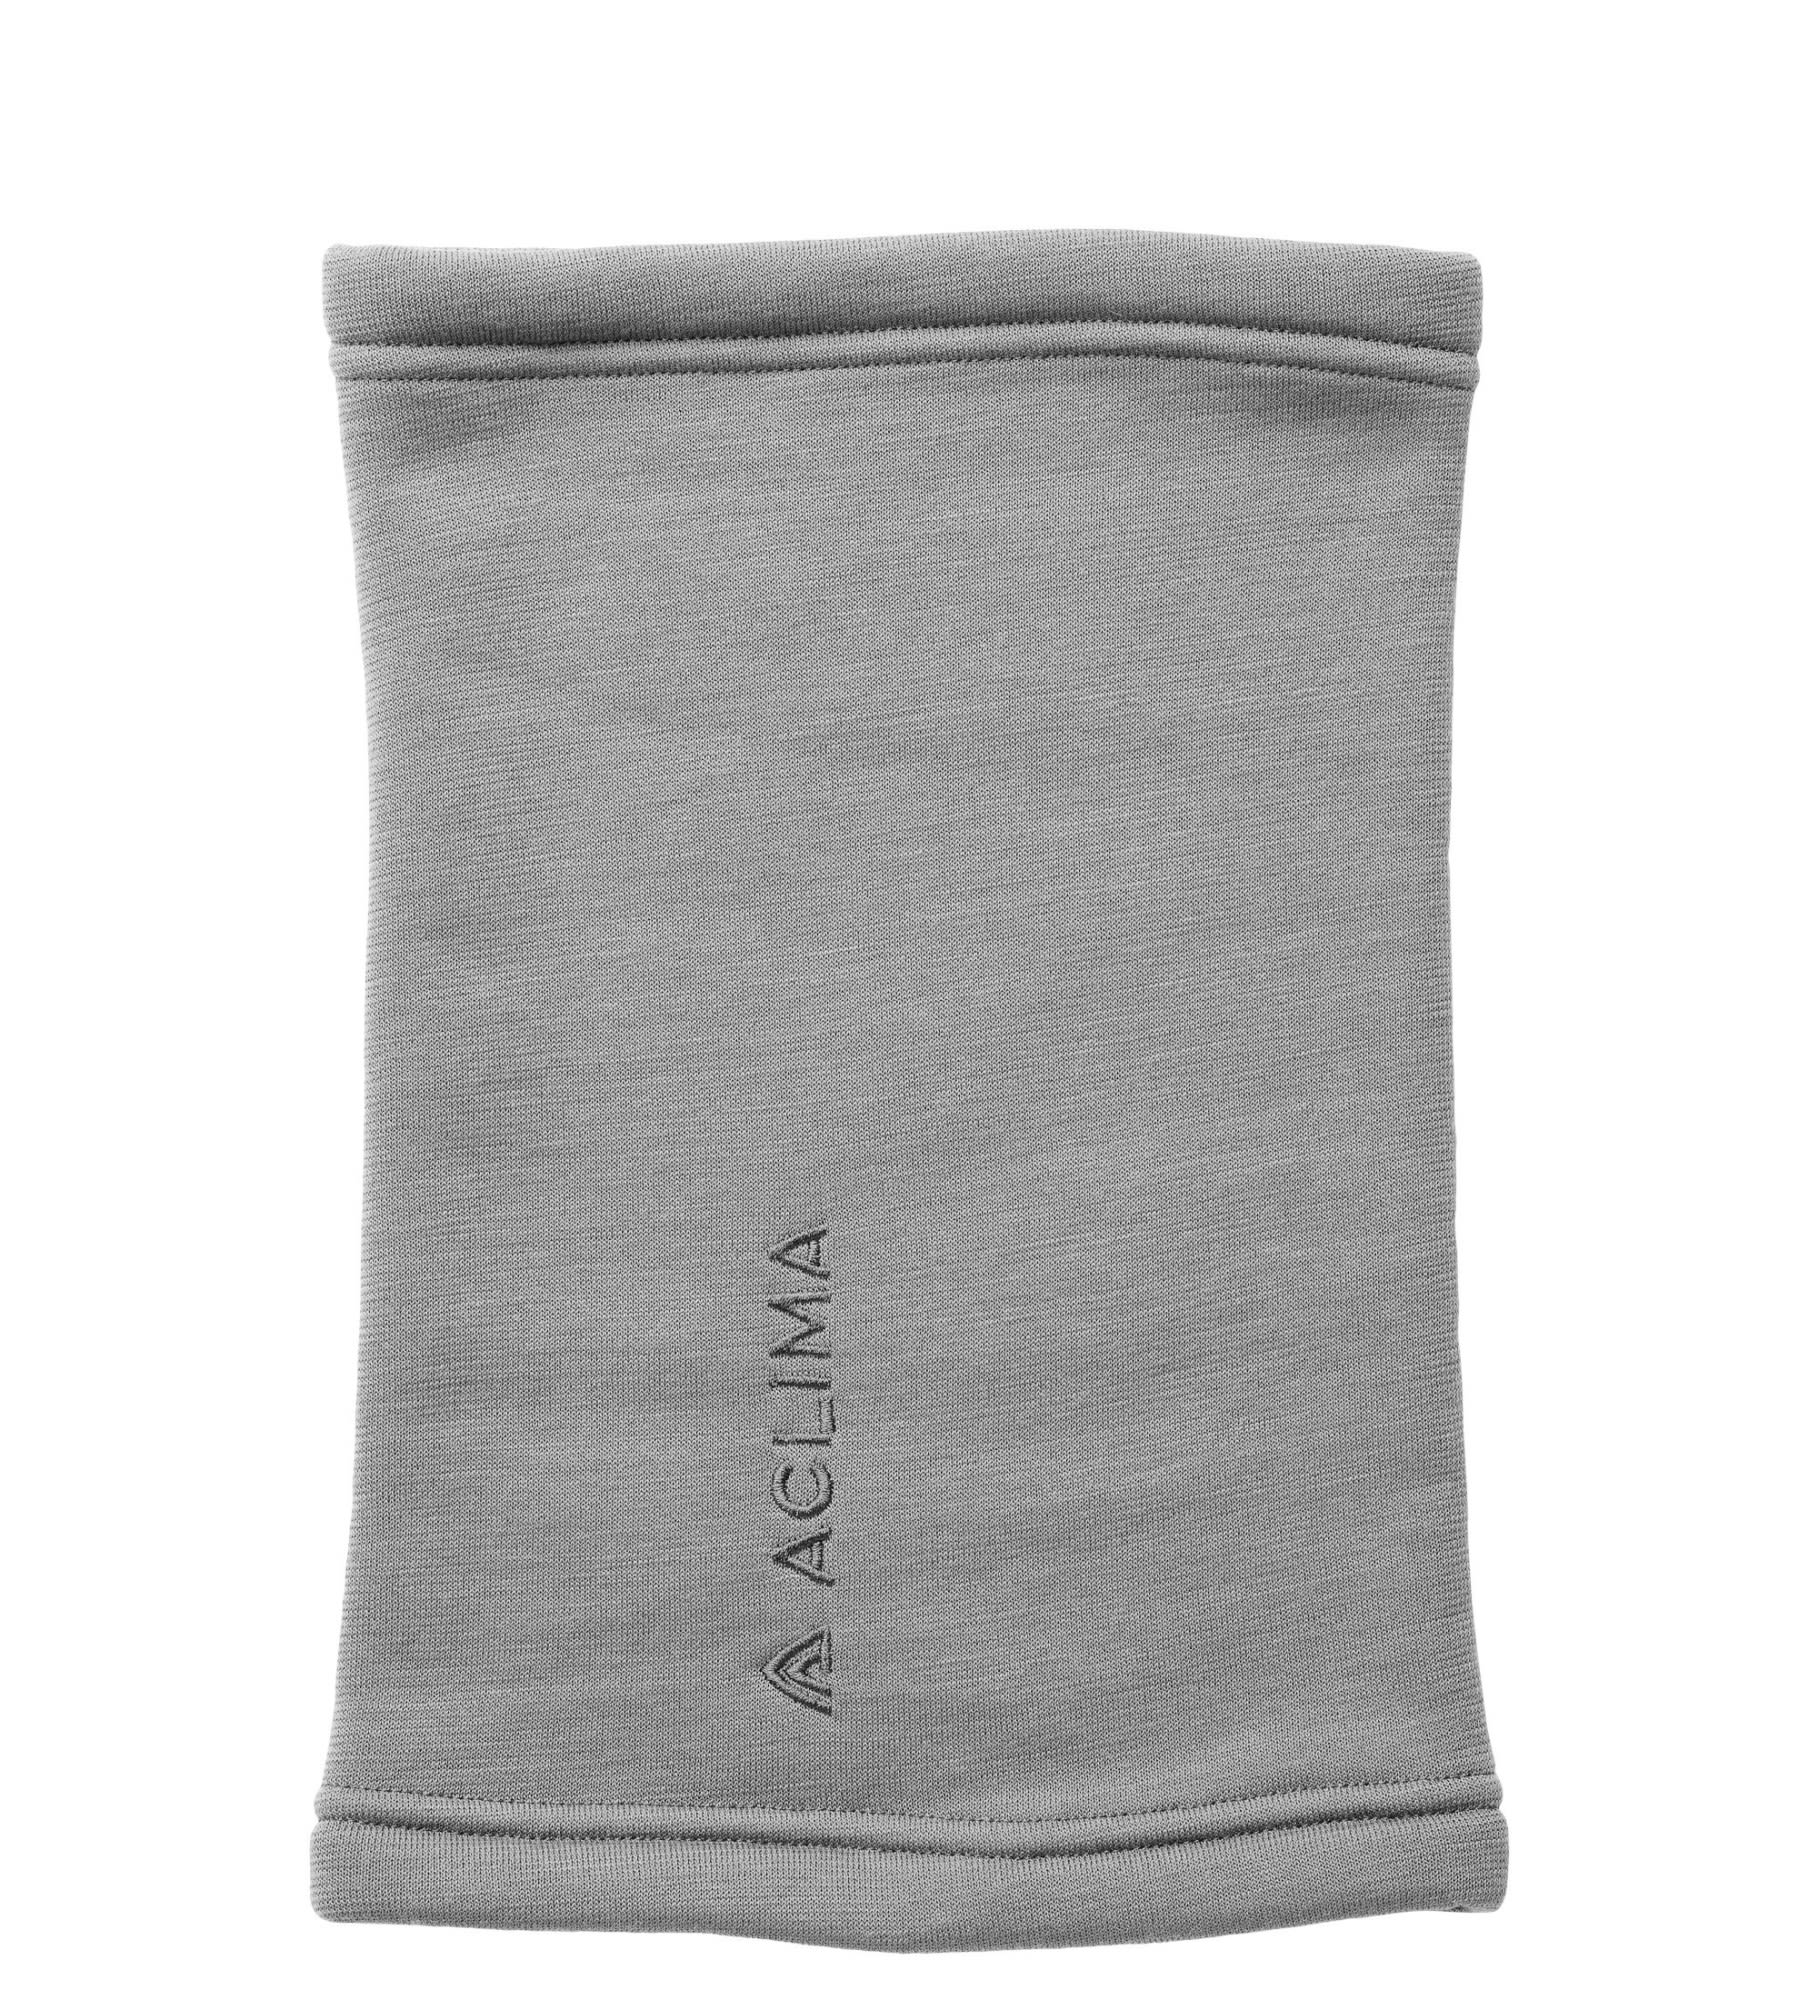 Aclima Fleecewool Headover Grau- Merino Schals und Halstcher- Grsse One Size - Farbe Grey Melange unter Aclima